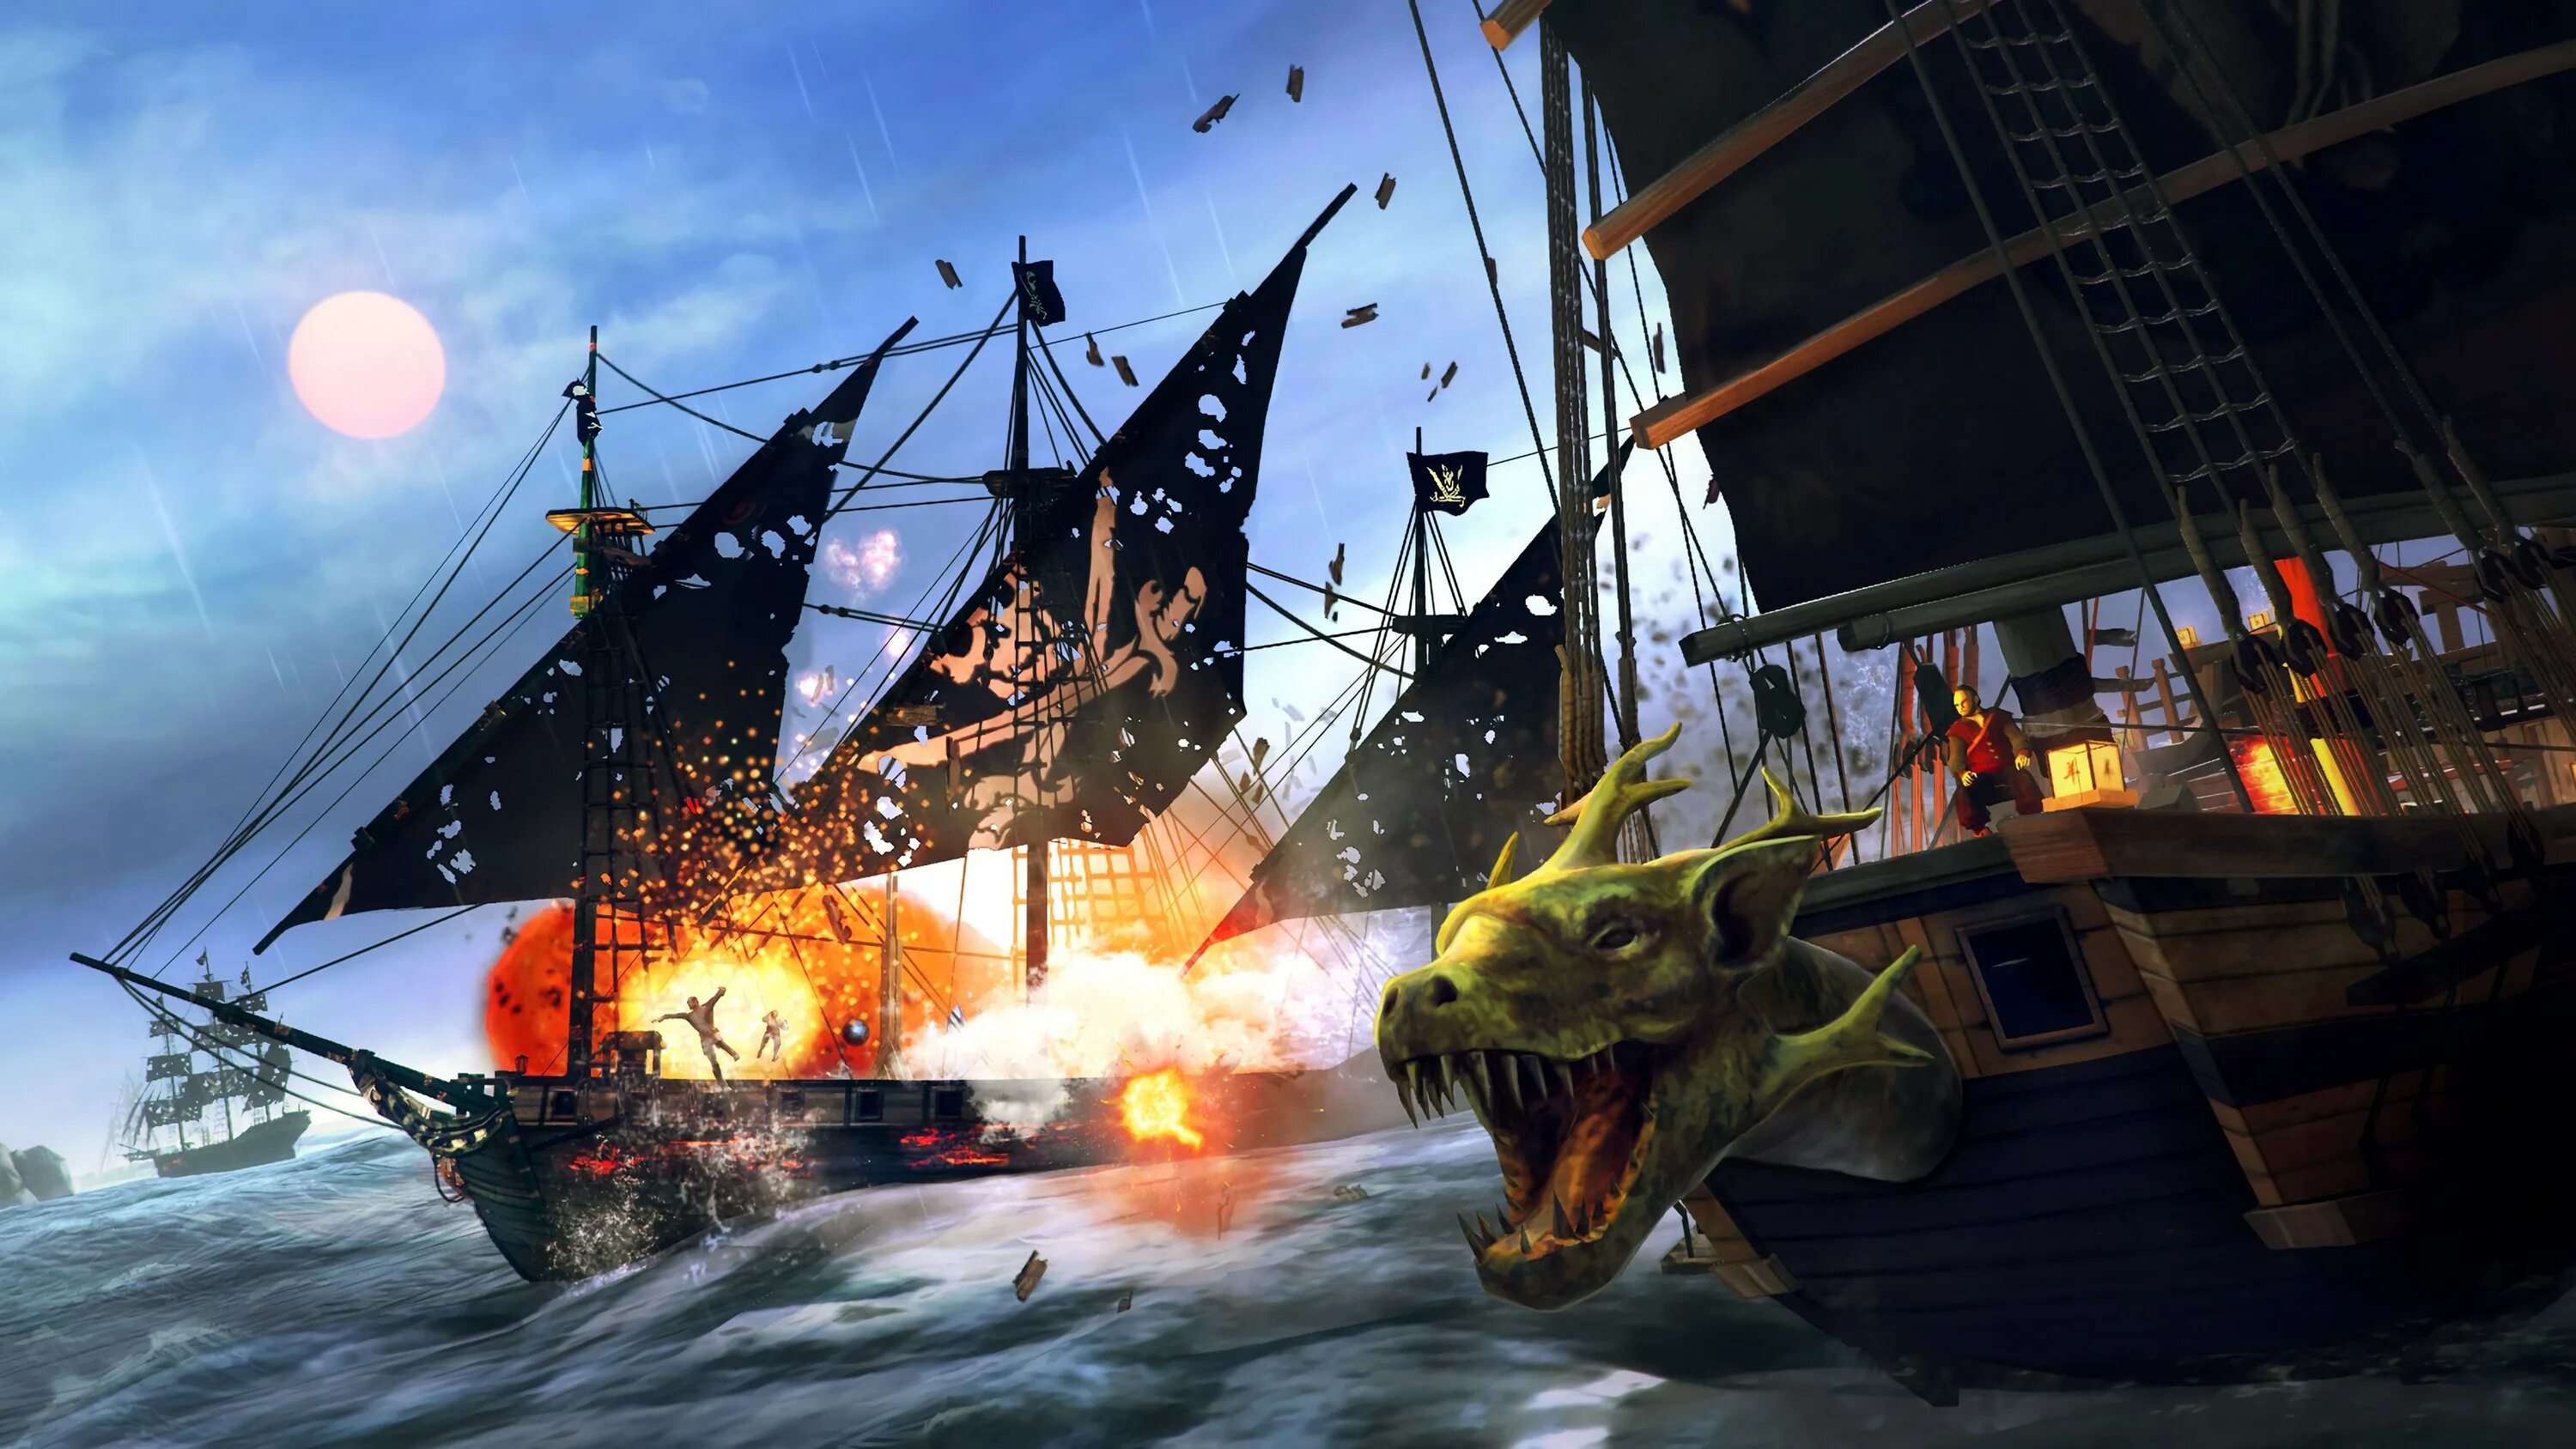 Tempest: Pirate Action RPG. Under the Jolly Roger игра. Пиратский корабль. Игра про корабли и пиратов. Под веселым роджером прохождение